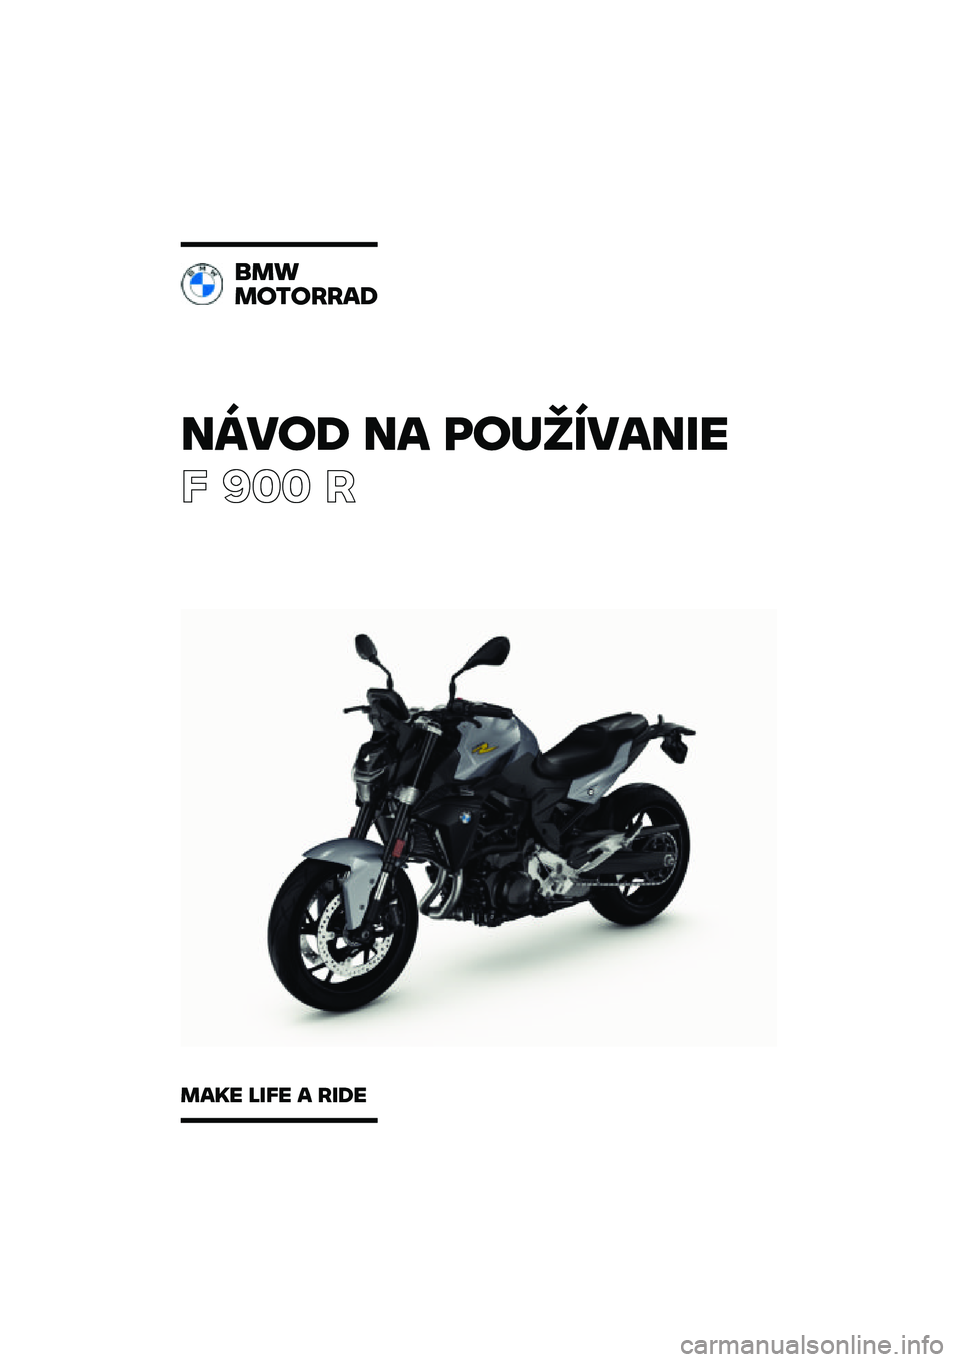 BMW MOTORRAD F 900 R 2021  Návod na používanie (in Slovak) �����\b �� �	��
�������
� ��� �
���
��������\b
���� ���� � ���\b� 